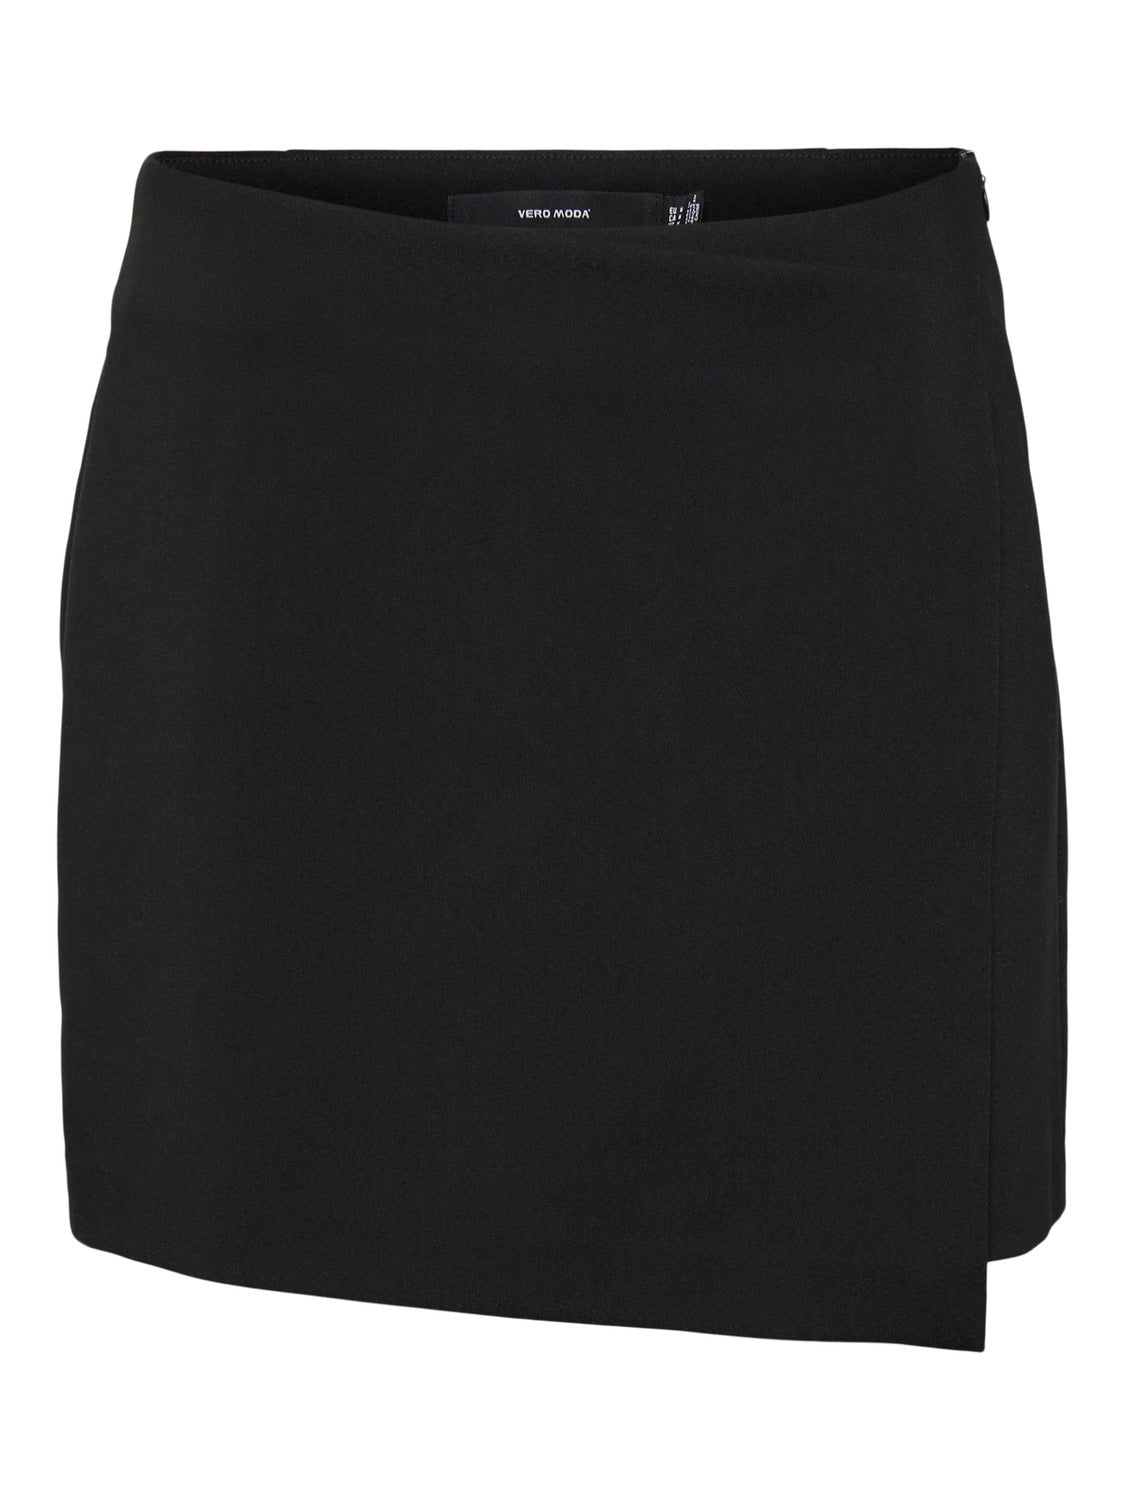 VMMIRA Skirt - Black